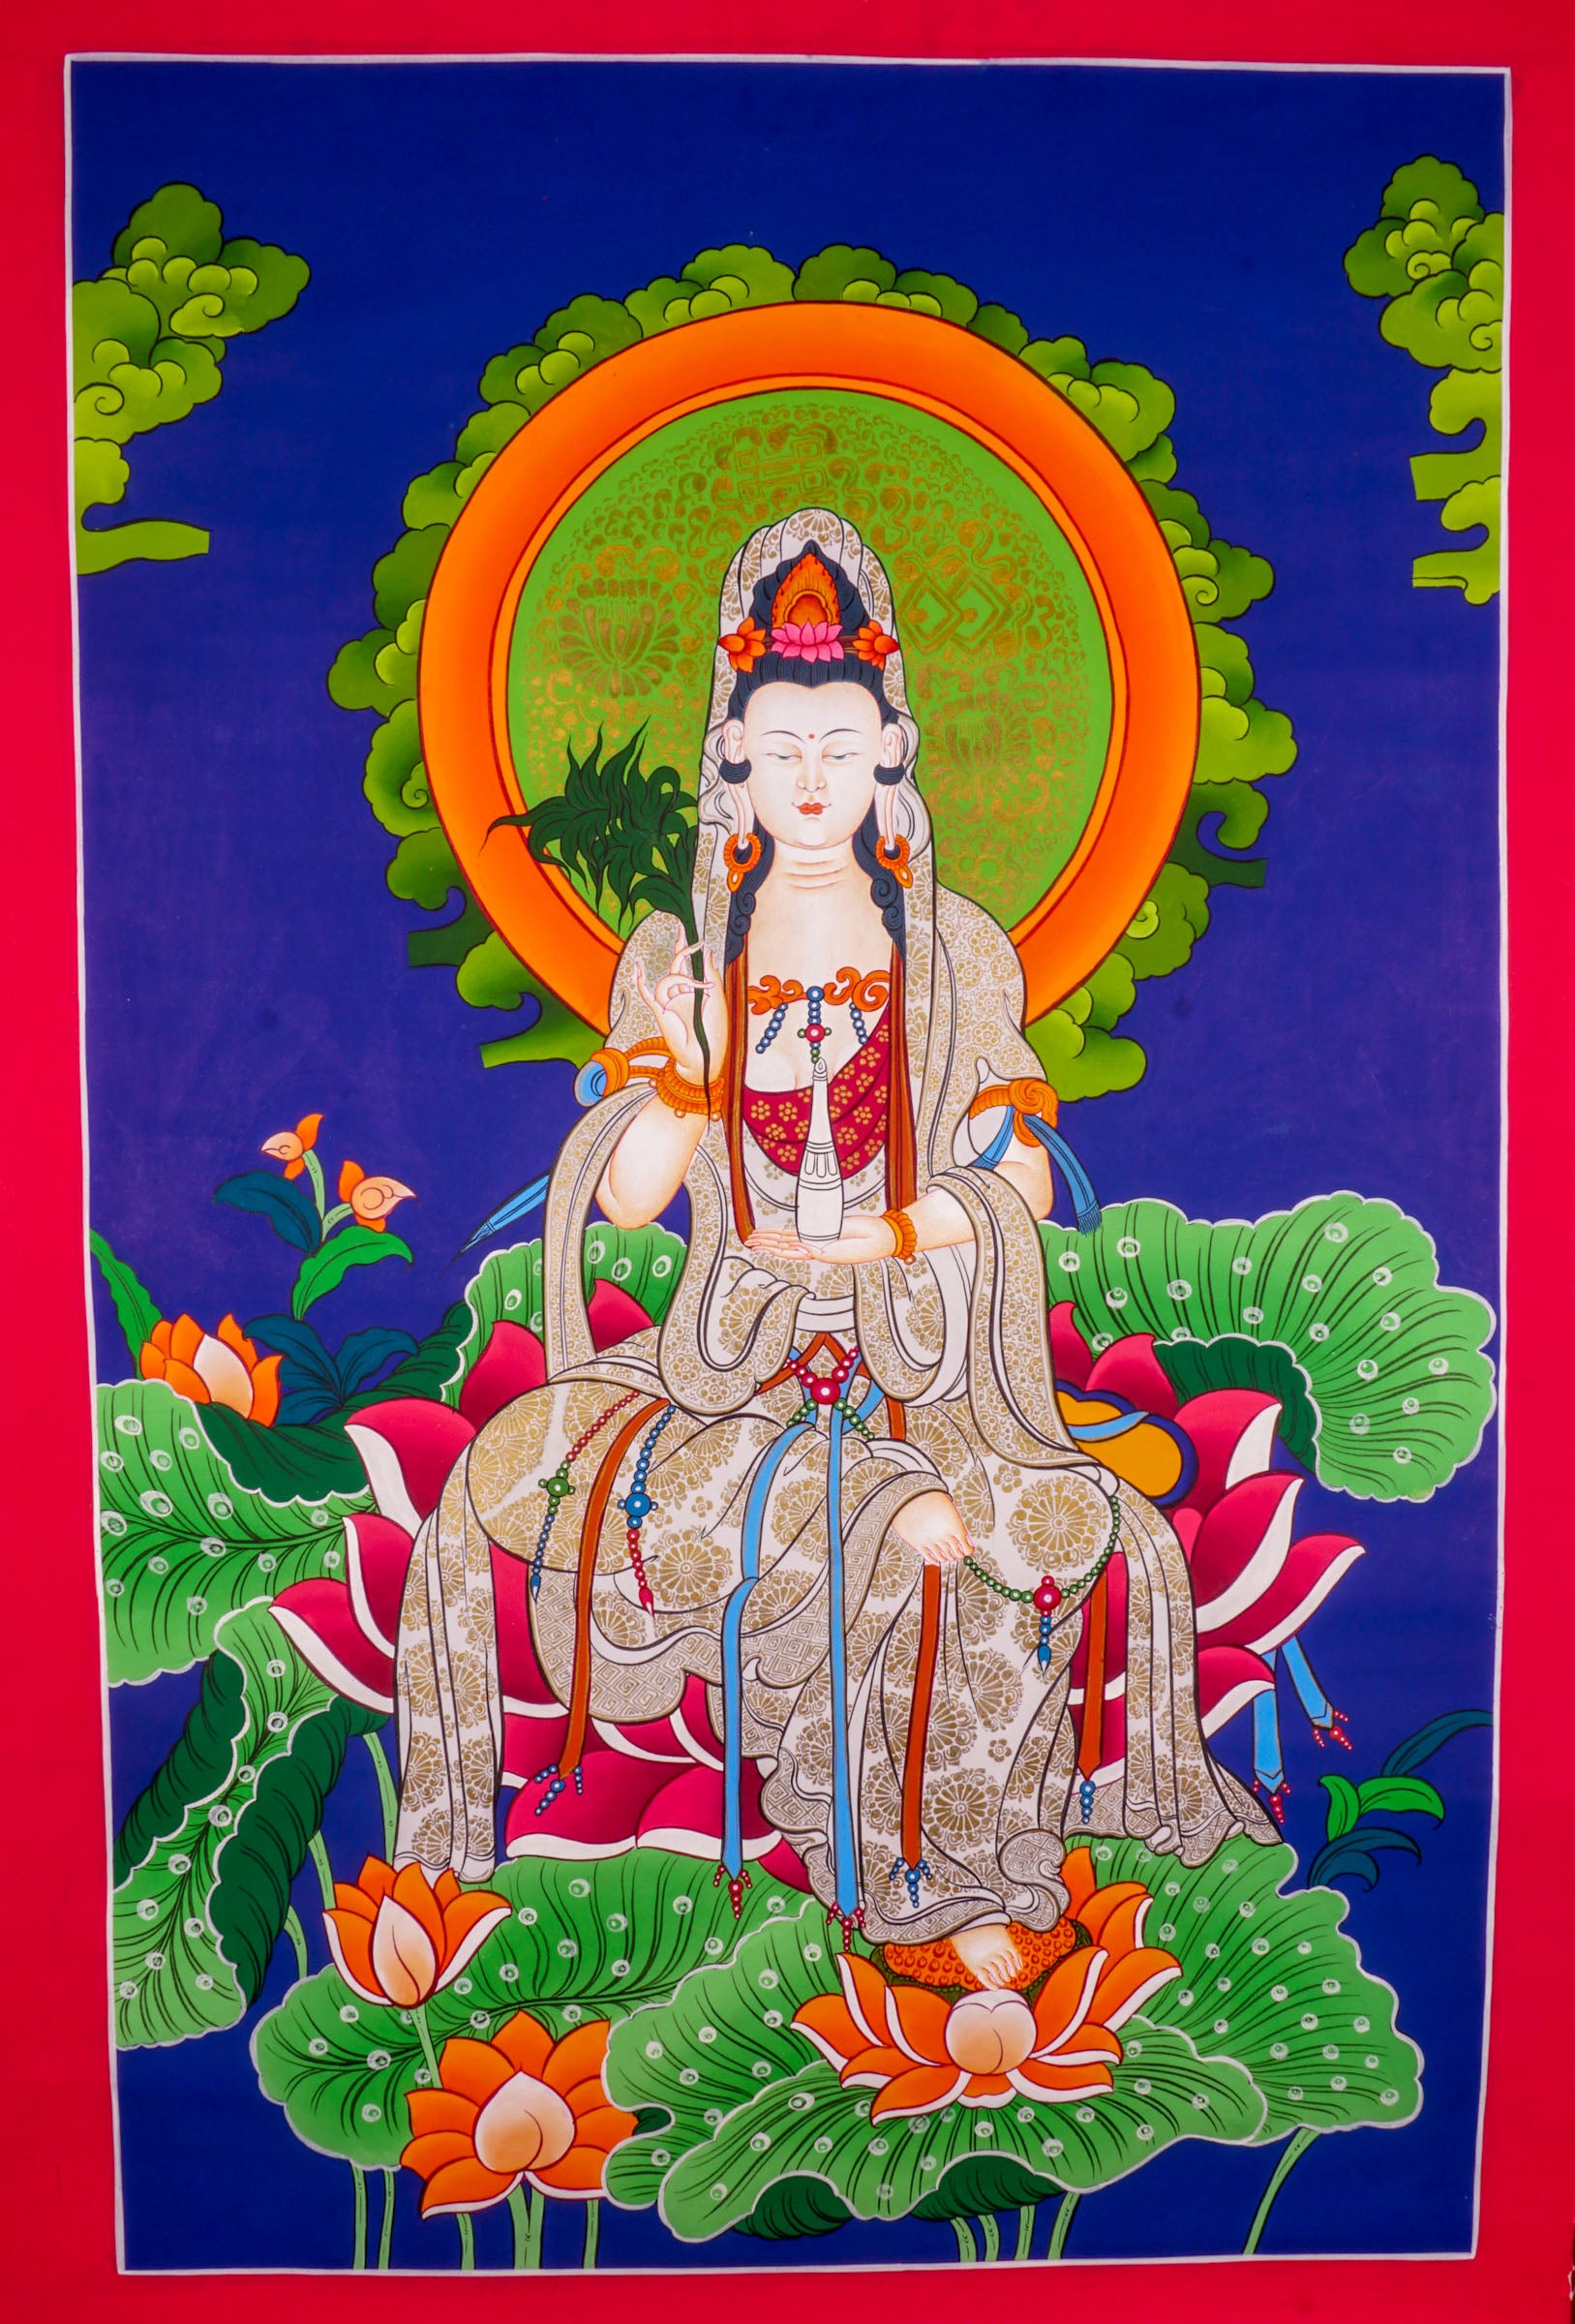 Guanyin Thangka Painting